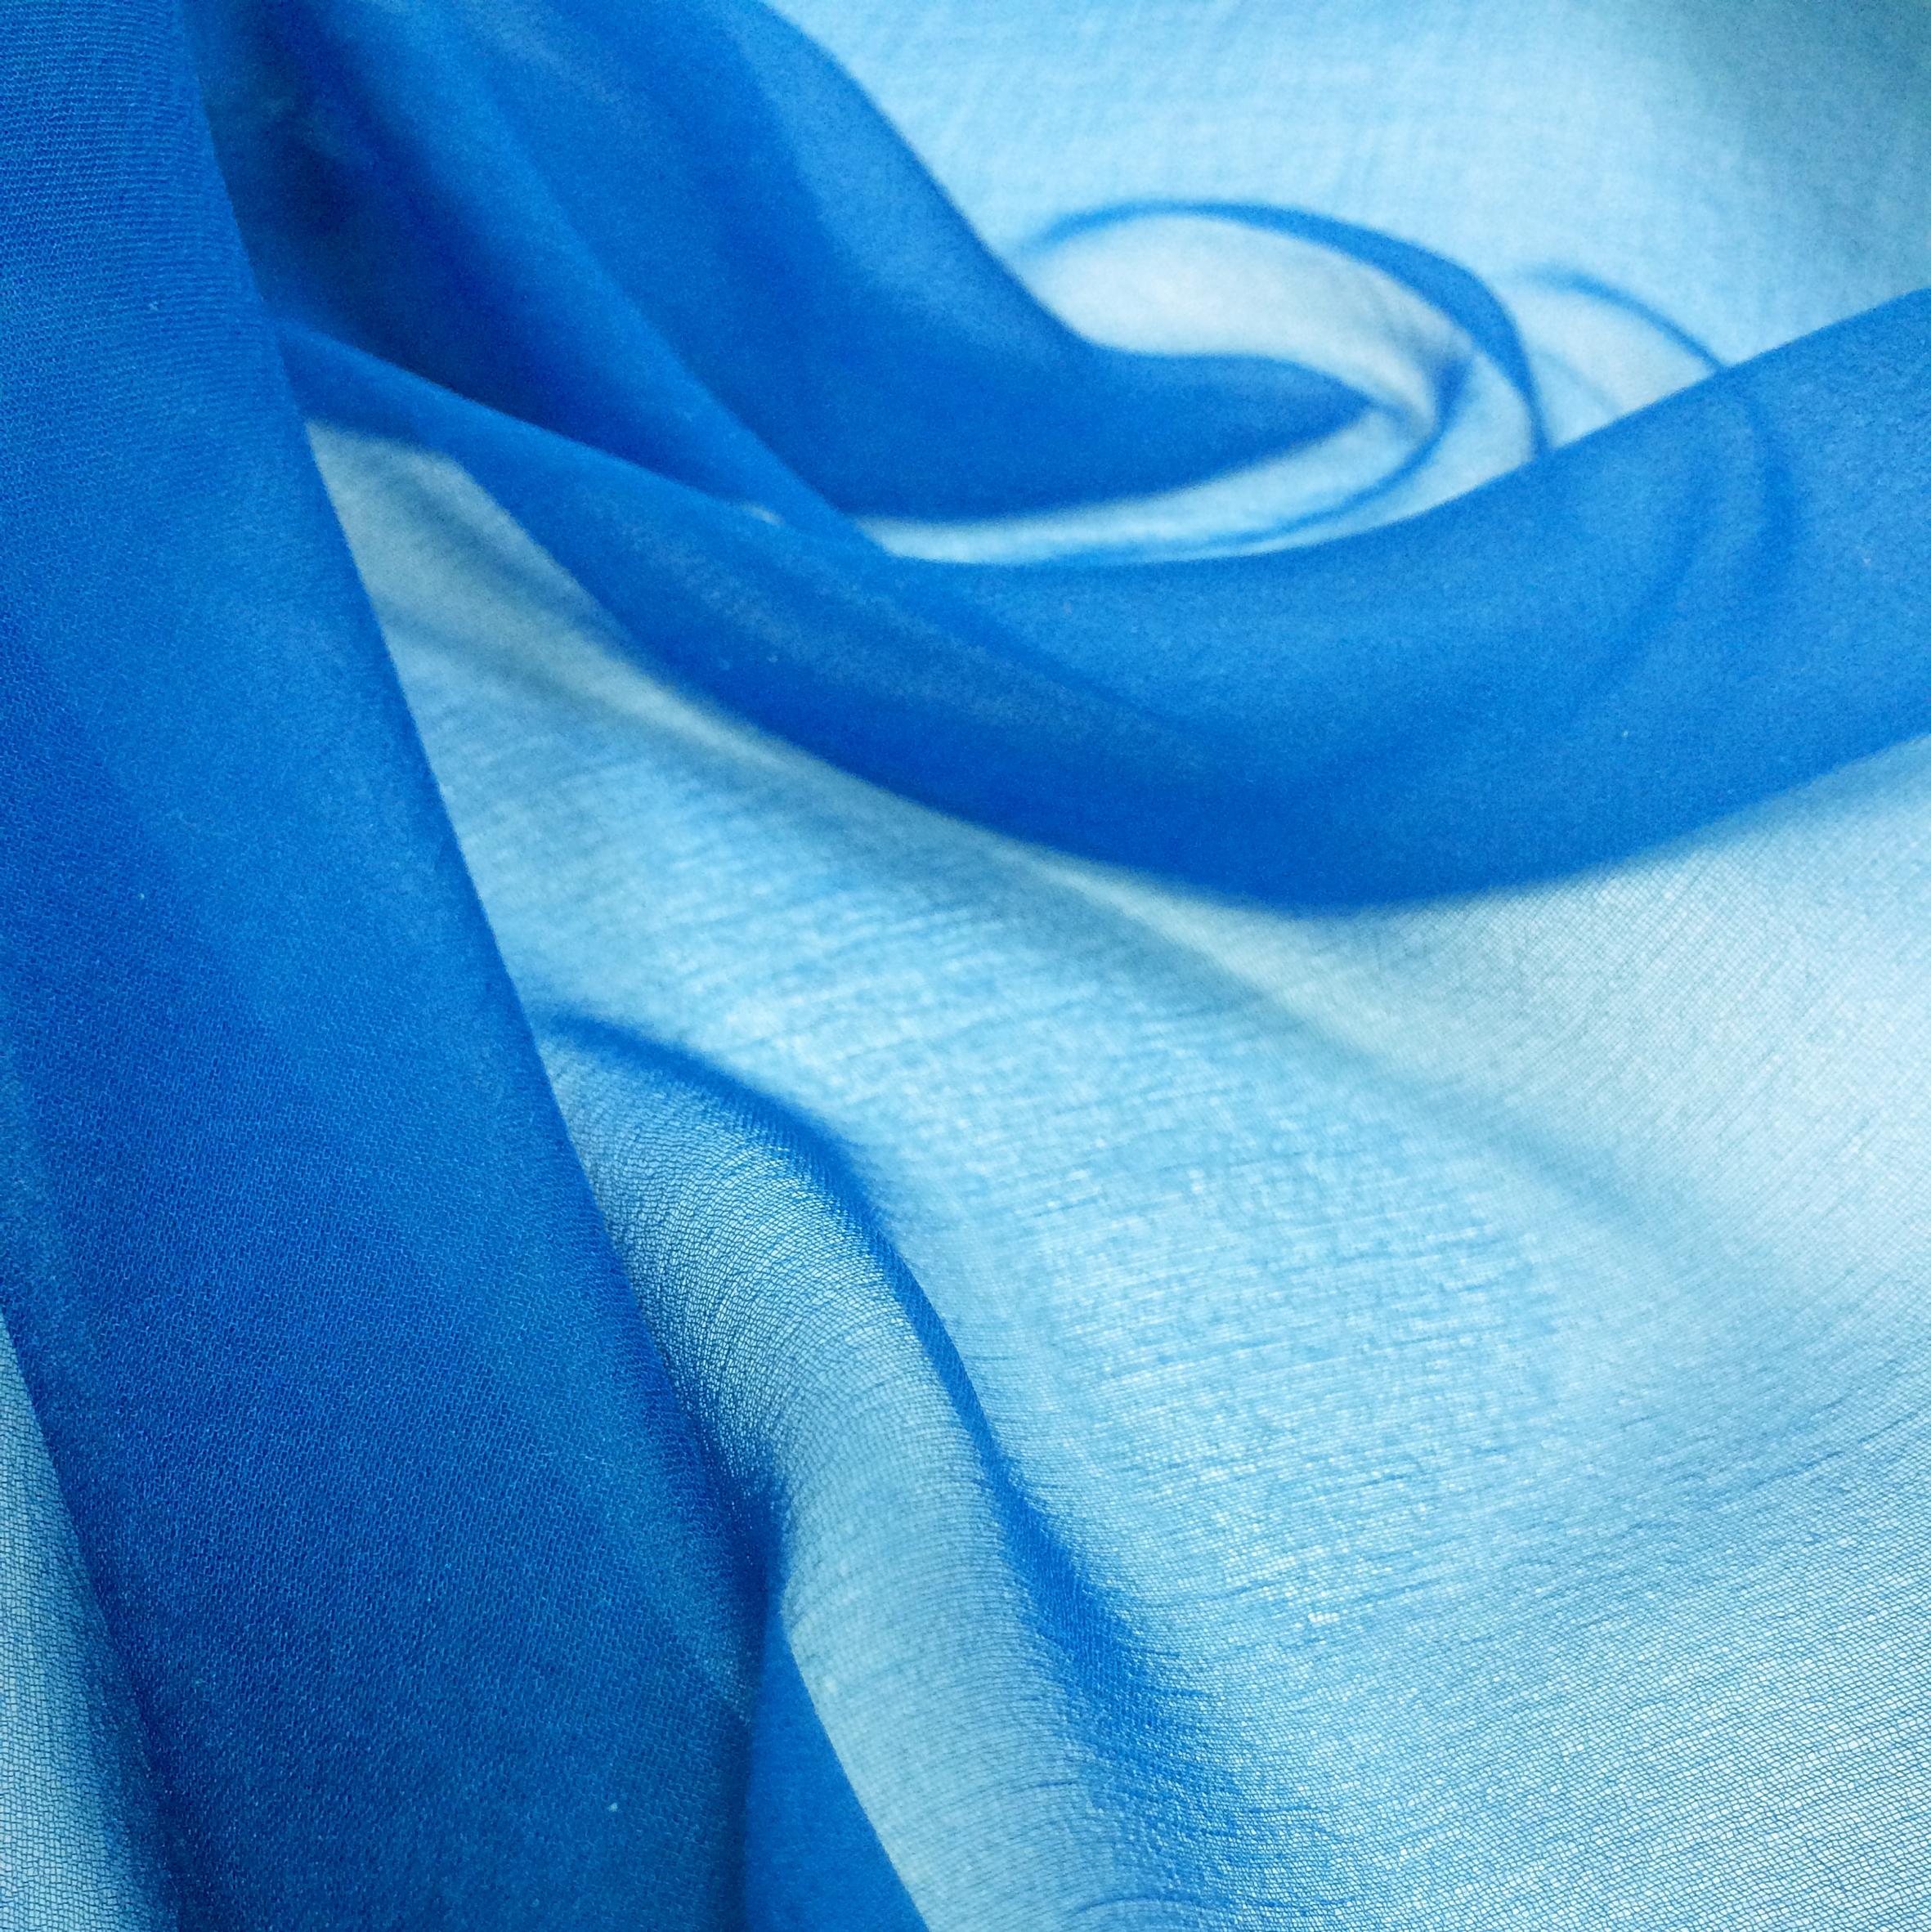 Silk Chiffon Fabric | UK Chiffon Wholesaler, London